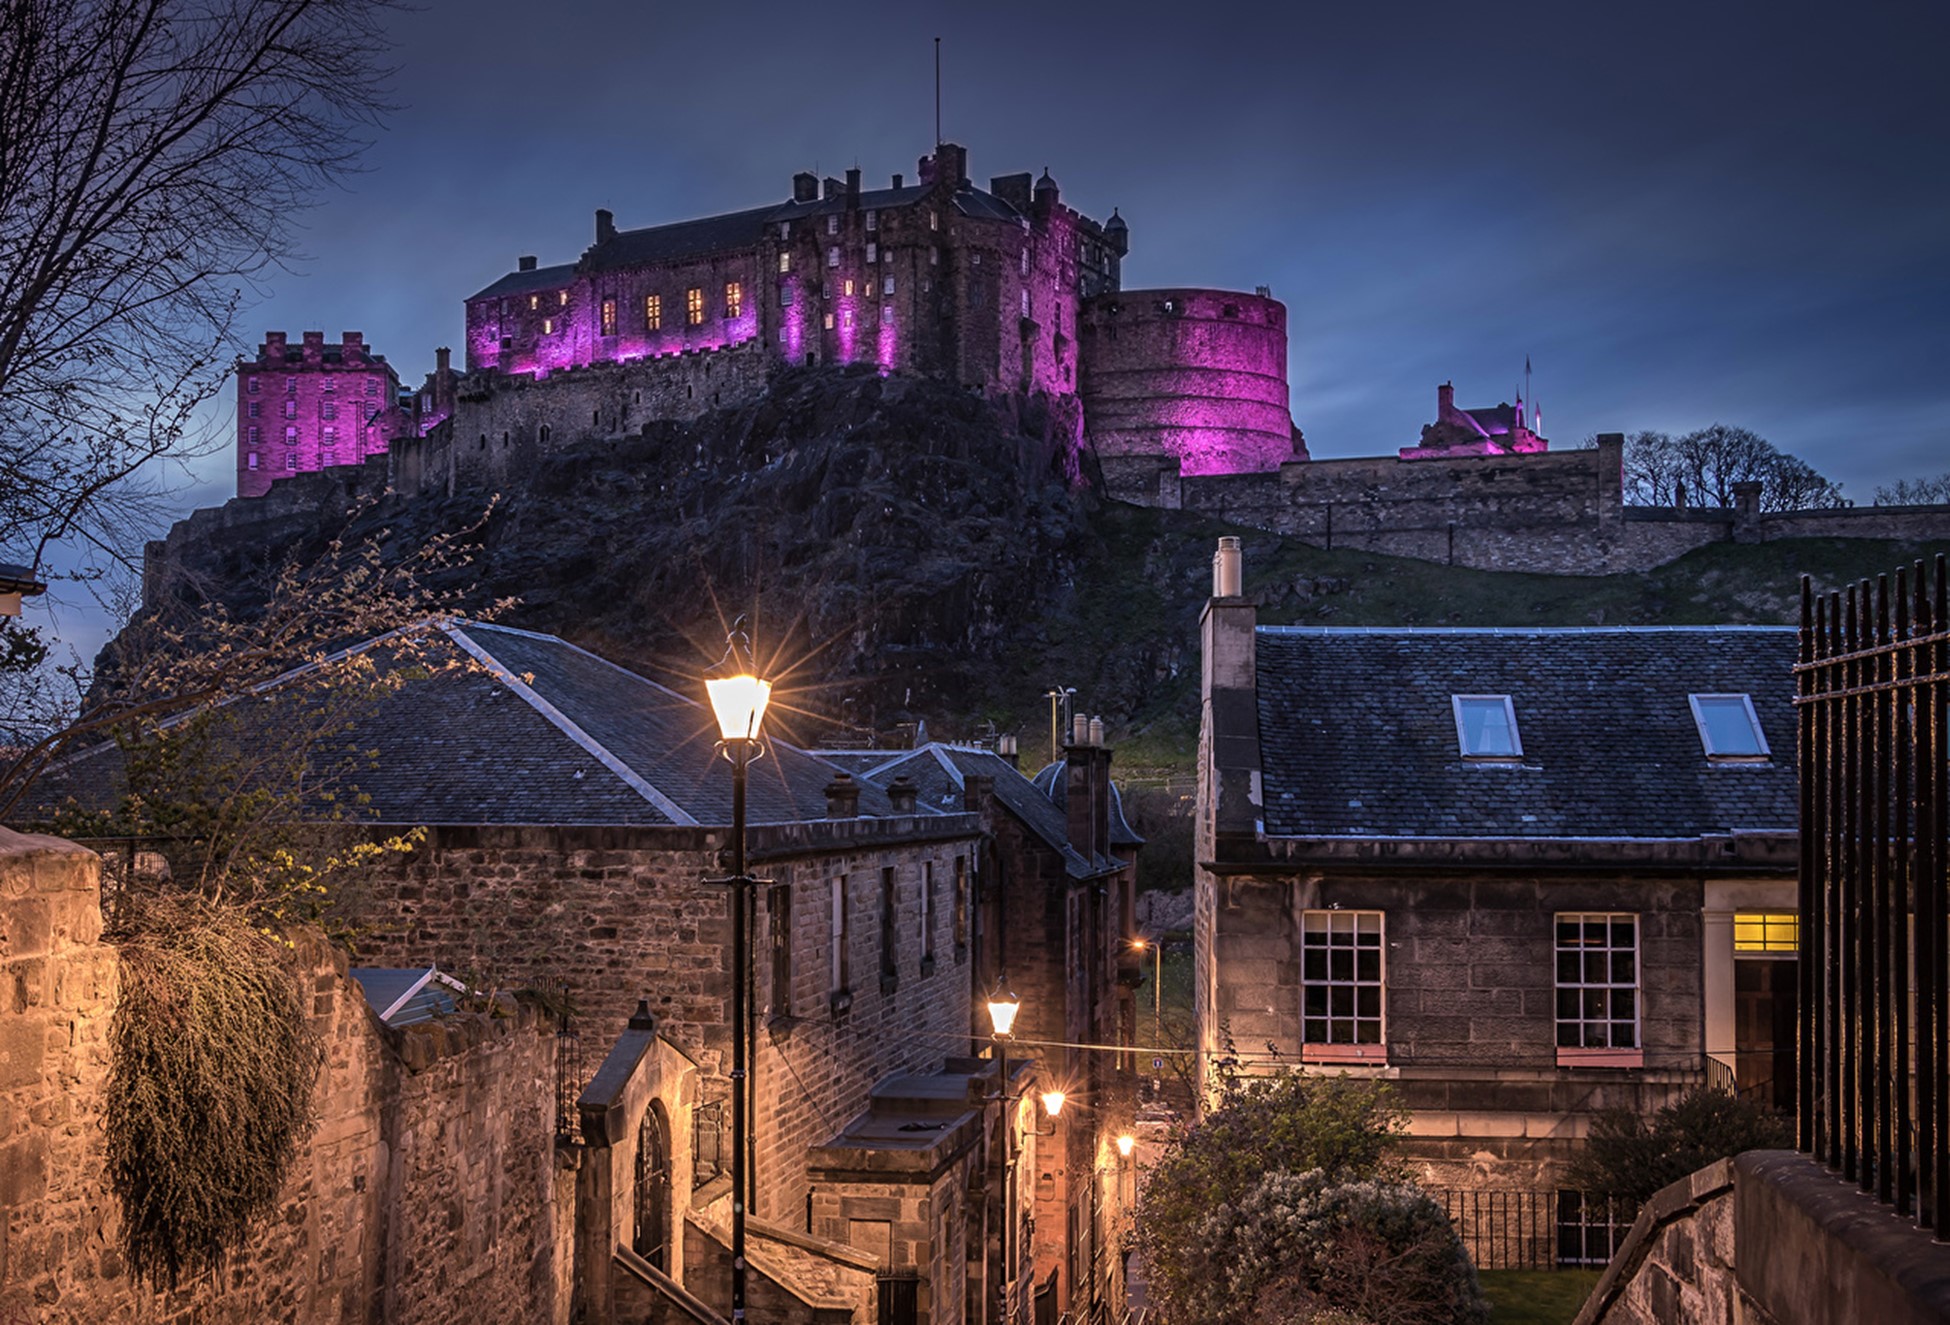 ການສະແດງທີ່ສວຍງາມ ແລະອົບອຸ່ນຂອງຖະໜົນສາຍຕ່າງໆໃນເມືອງ Edinburgh ໃນຕອນແລງທີ່ເບິ່ງເຫັນວິວທີ່ໜ້າຈັບໃຈຂອງ Castle ປະຫວັດສາດ. ອັນນີ້ຍັງສືບຕໍ່ເປັນສິ່ງເຕືອນໃຈທີ່ທັນສະໄຫມຂອງອະດີດທີ່ທົນທານແລະຈິດໃຈຂອງປະເທດ.